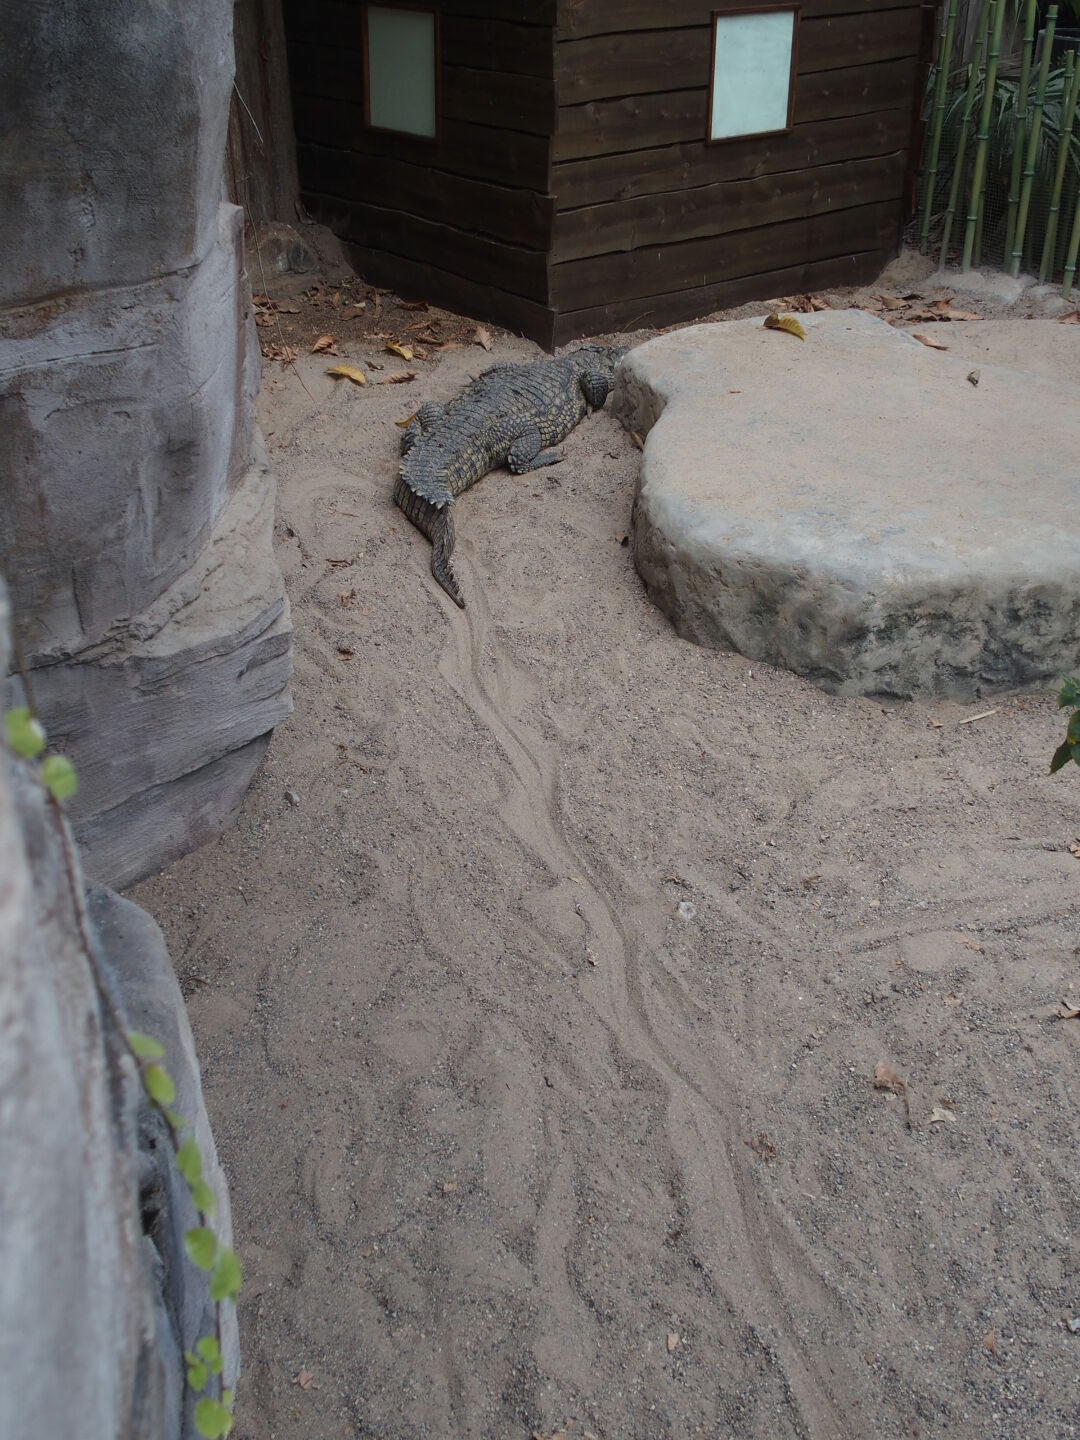 Krokodilspuren im Sand. Veröffentlicht mit freundlicher Genehmigung vom Tropen-Aquarium Hagenbeck.